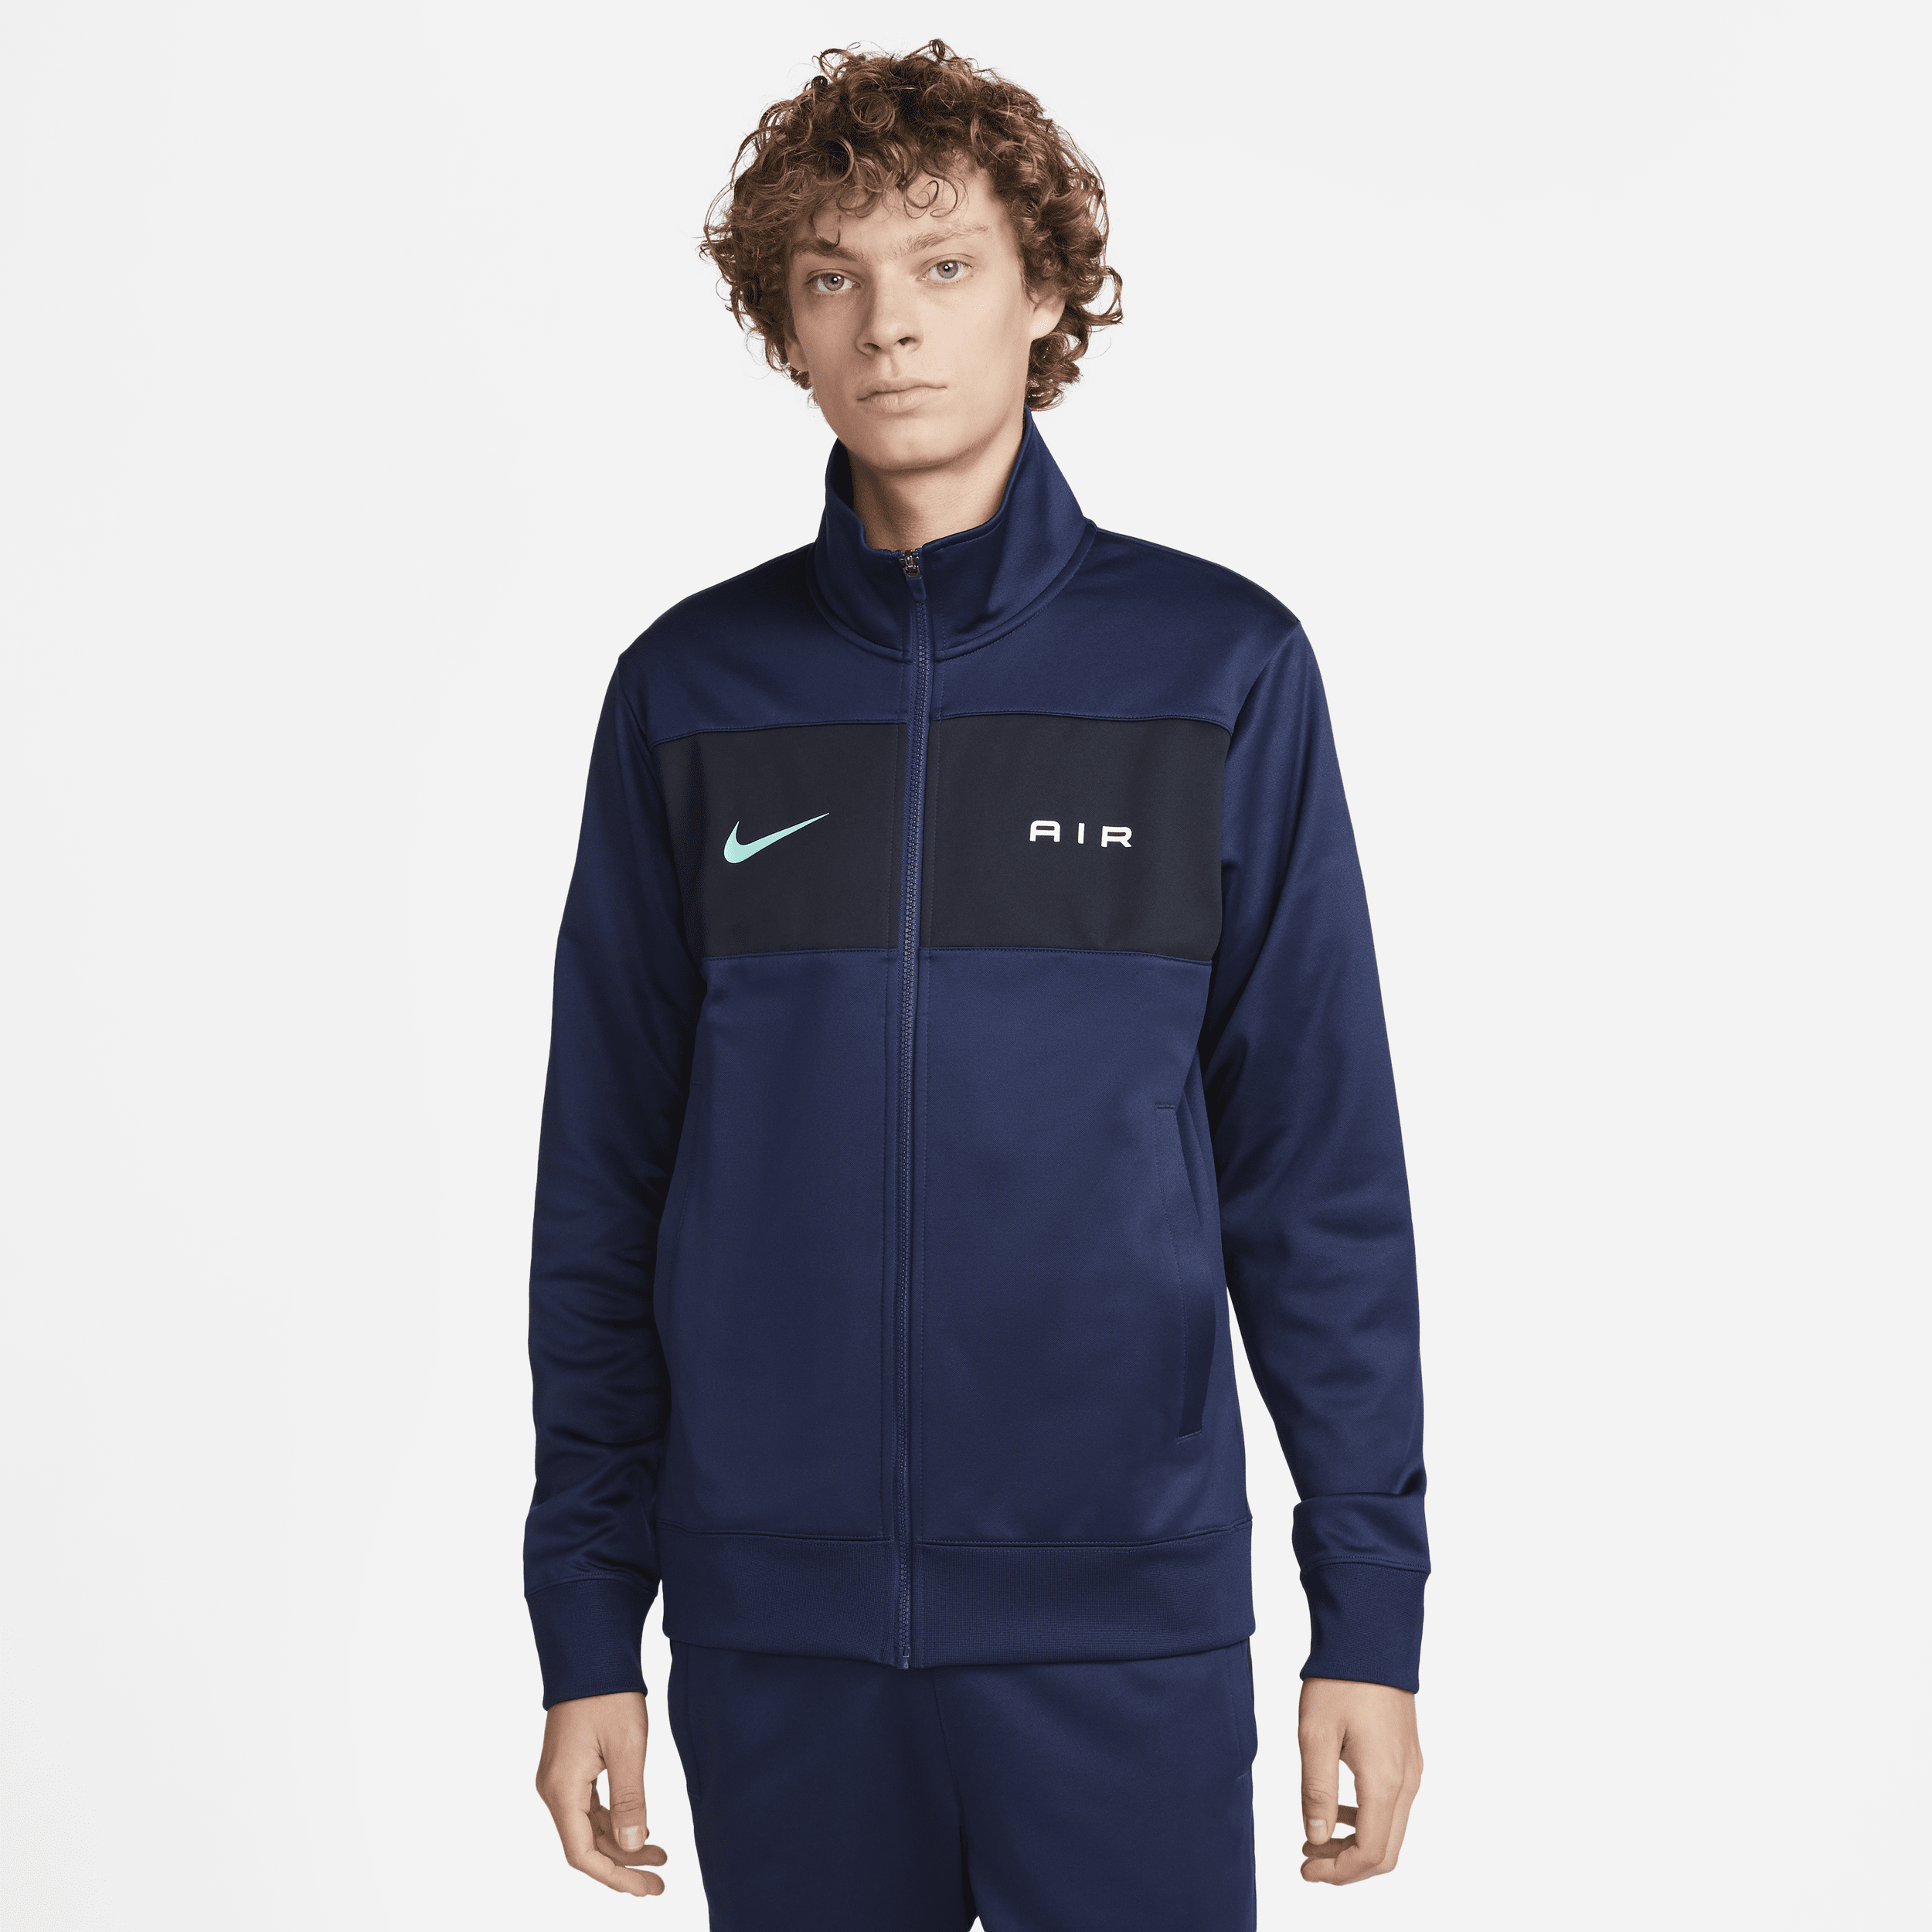 Nike Air trainingsjack voor heren - Blauw